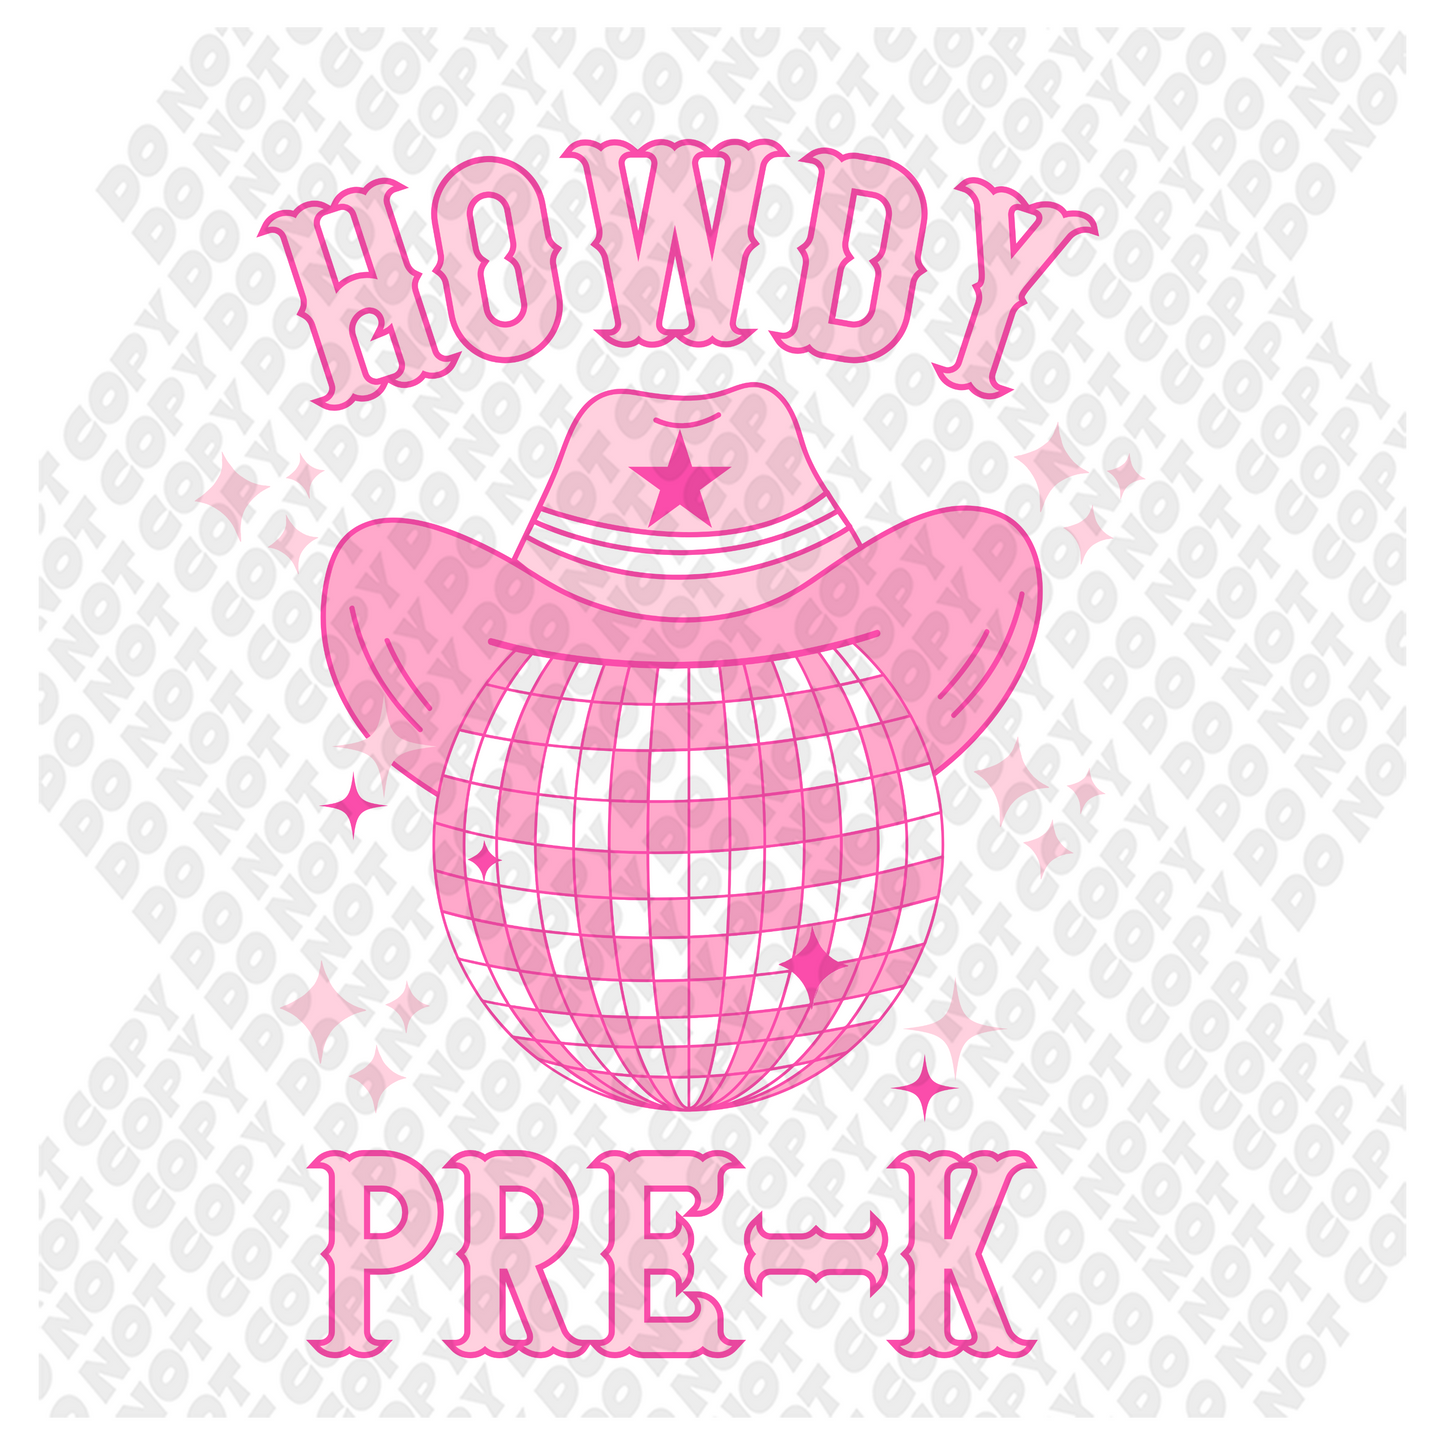 Howdy Disco Ball Pre-K